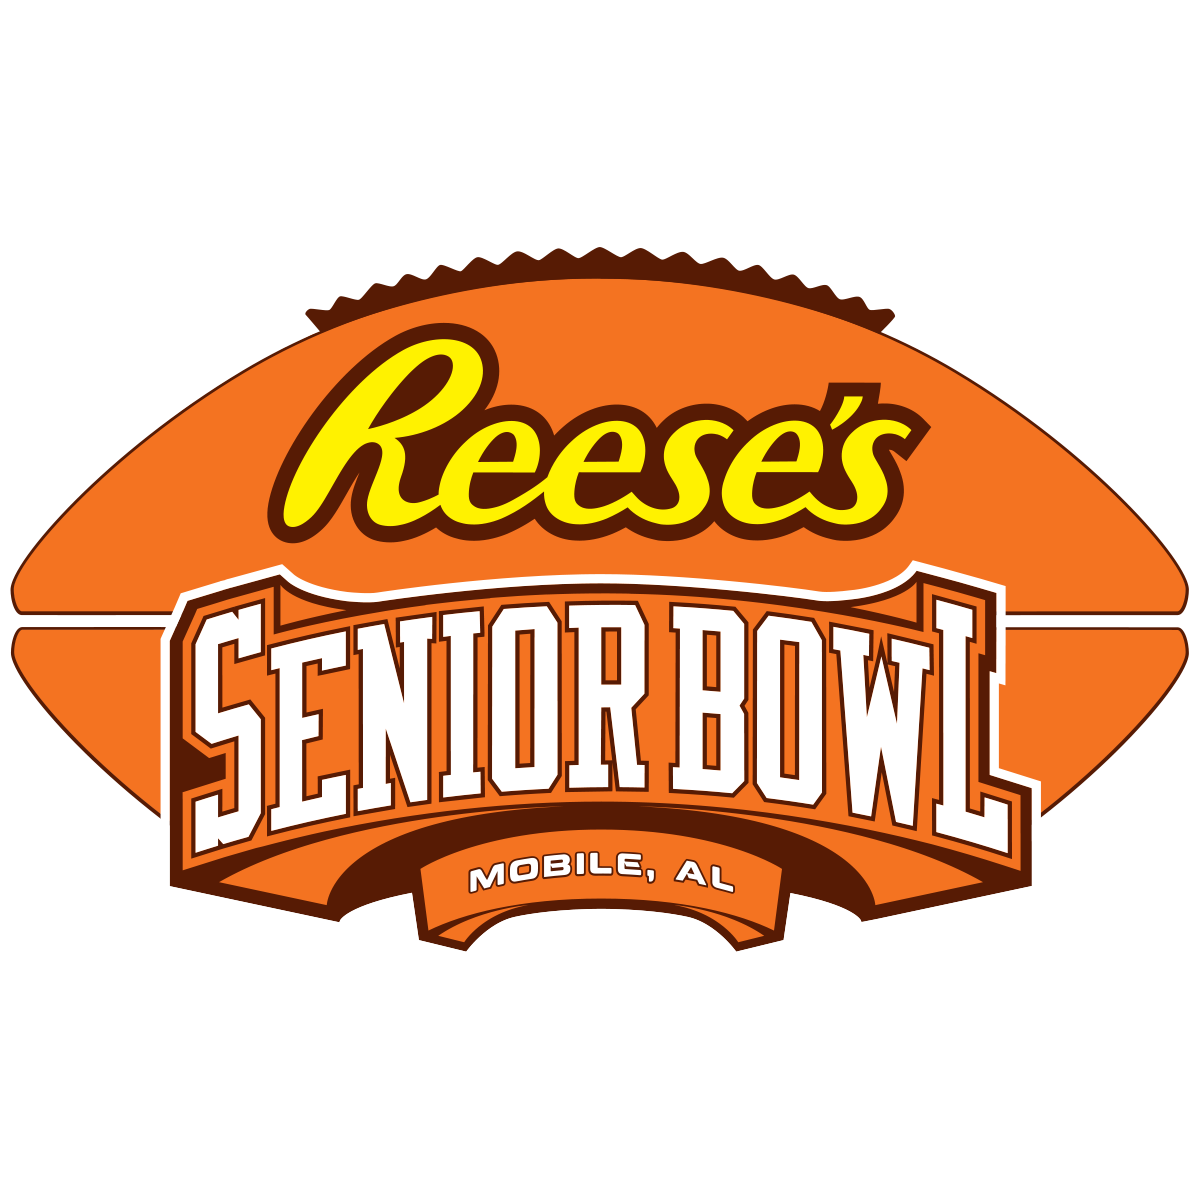 Senior Bowl logo...